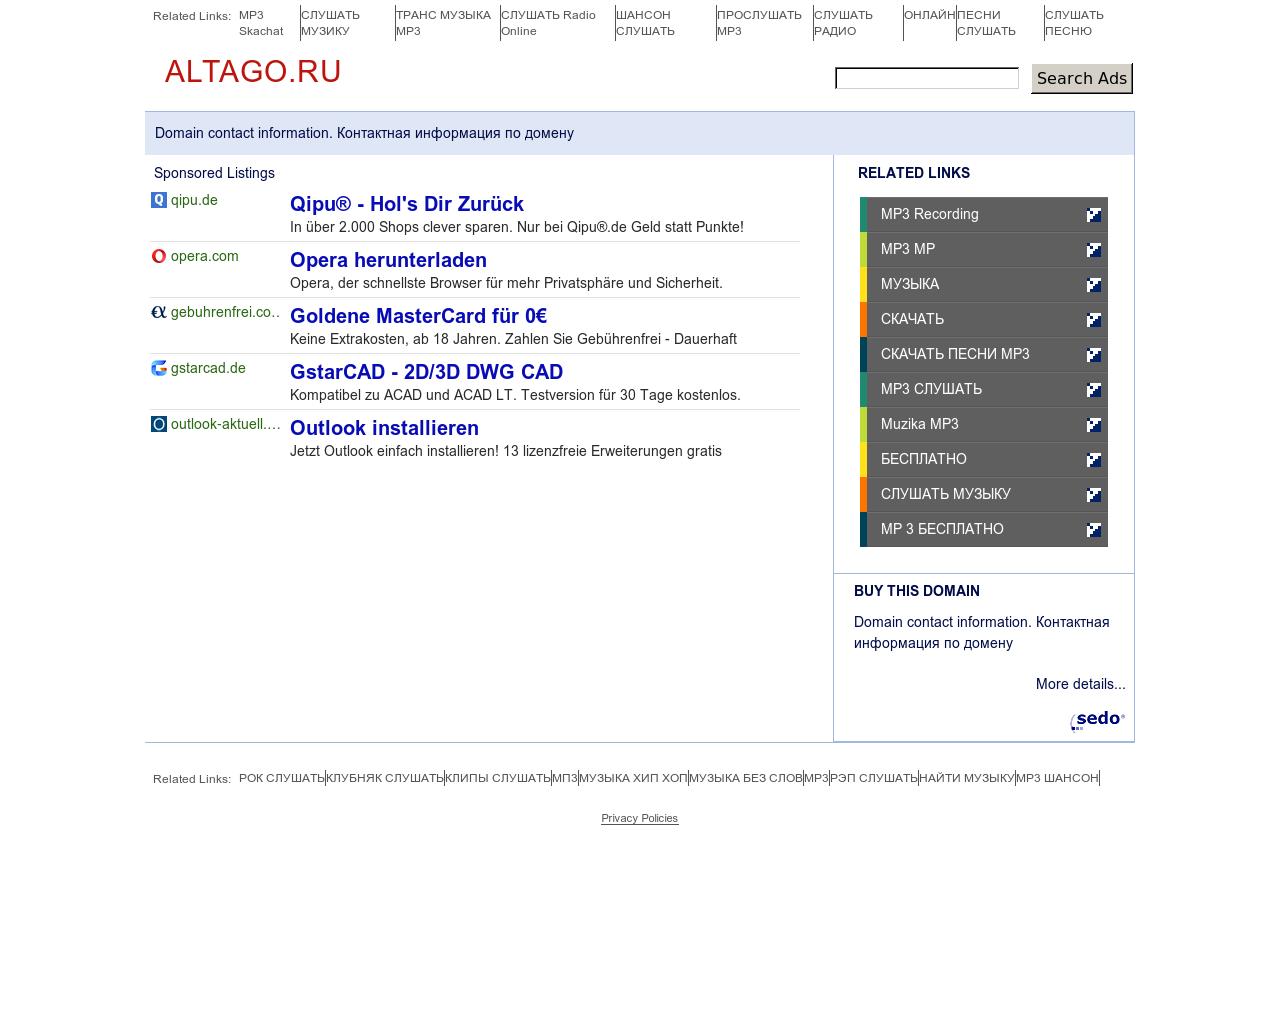 Изображение сайта altago.ru в разрешении 1280x1024